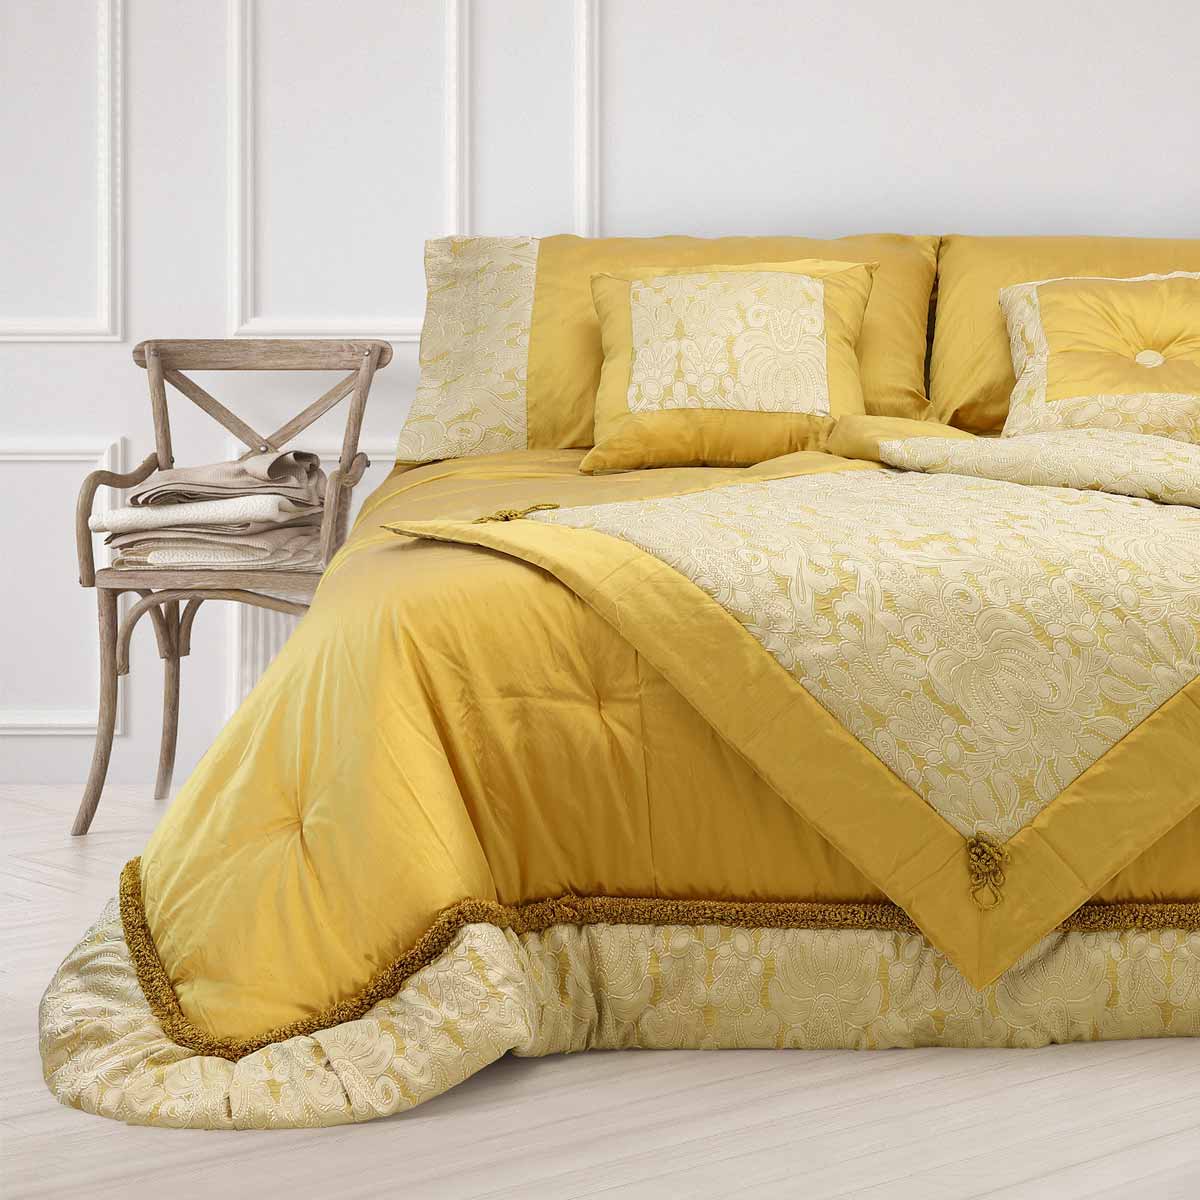 Coordinato letto in pura seta di colore oro composto trapunta, foulard e coppia federe arredo